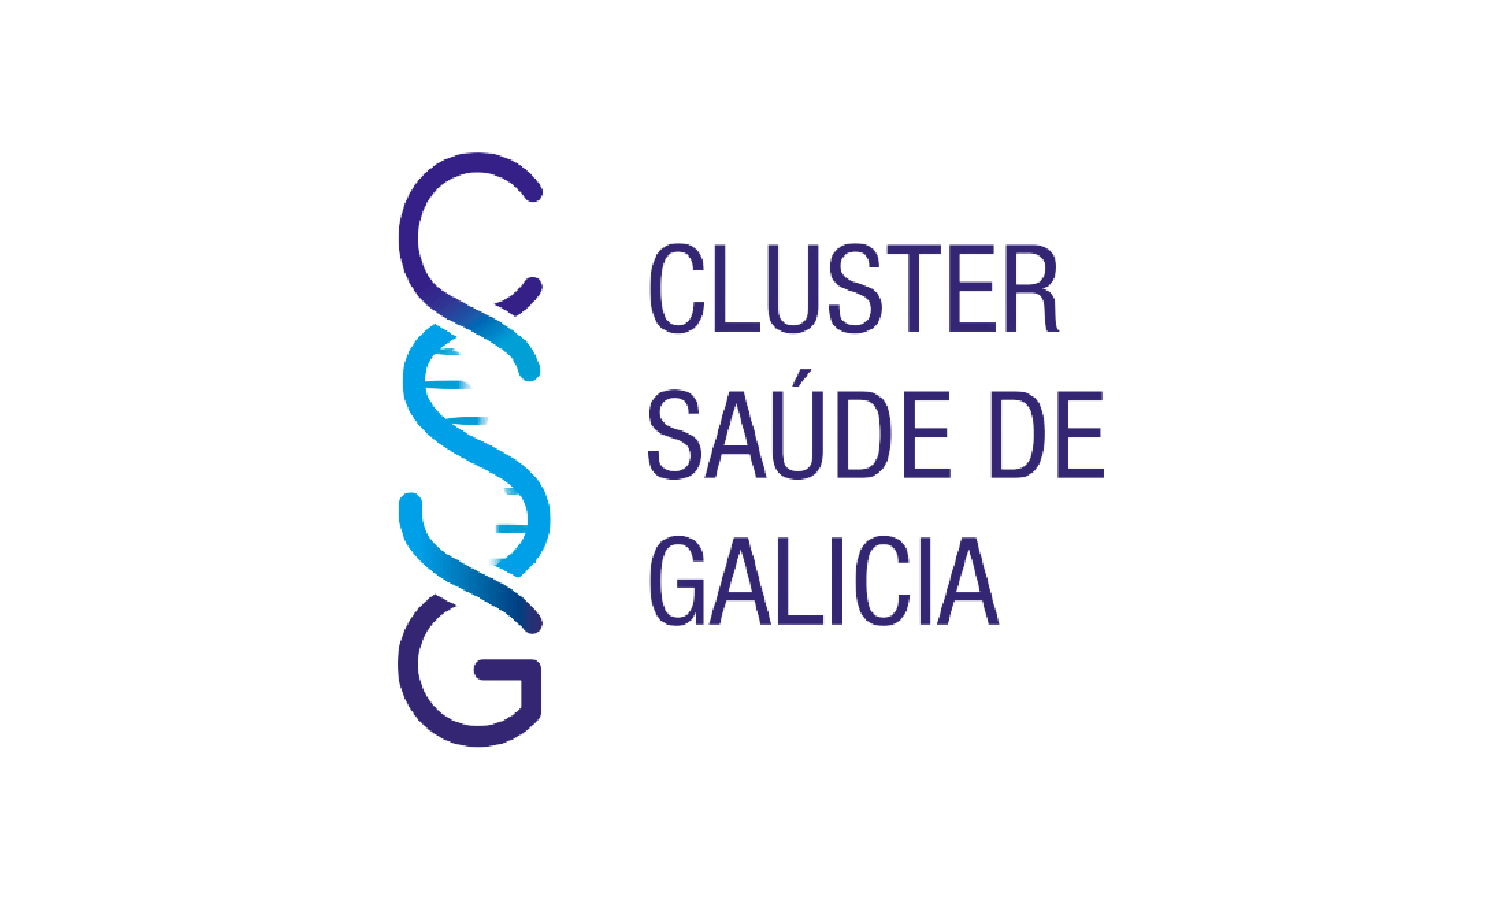 CSG Cluster Saúde de Galicia